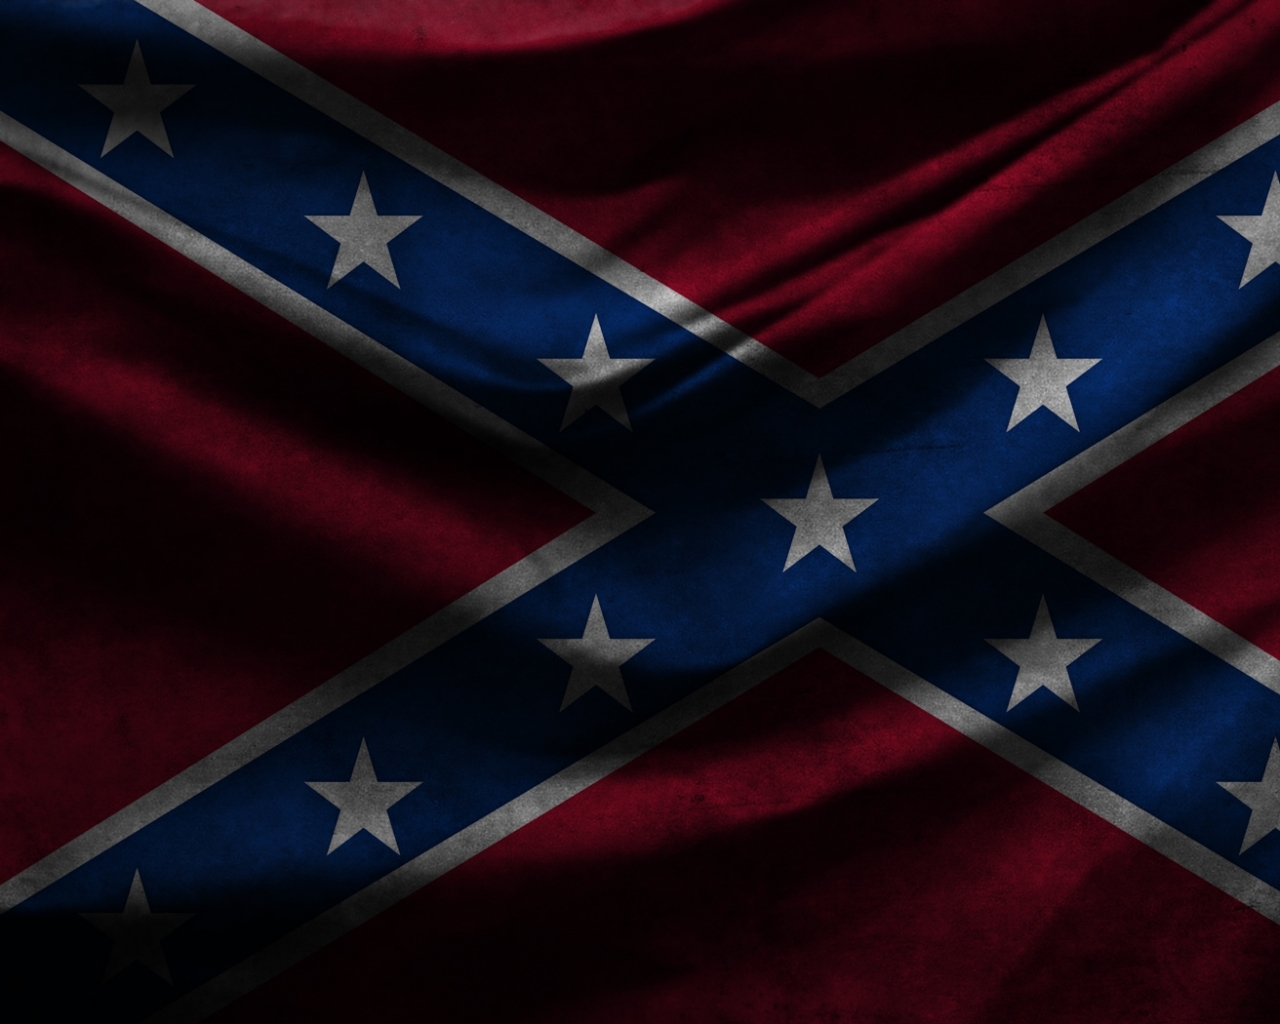  Download 1280x1024 Confederate flag Confederate flag Wallpaper 1280x1024